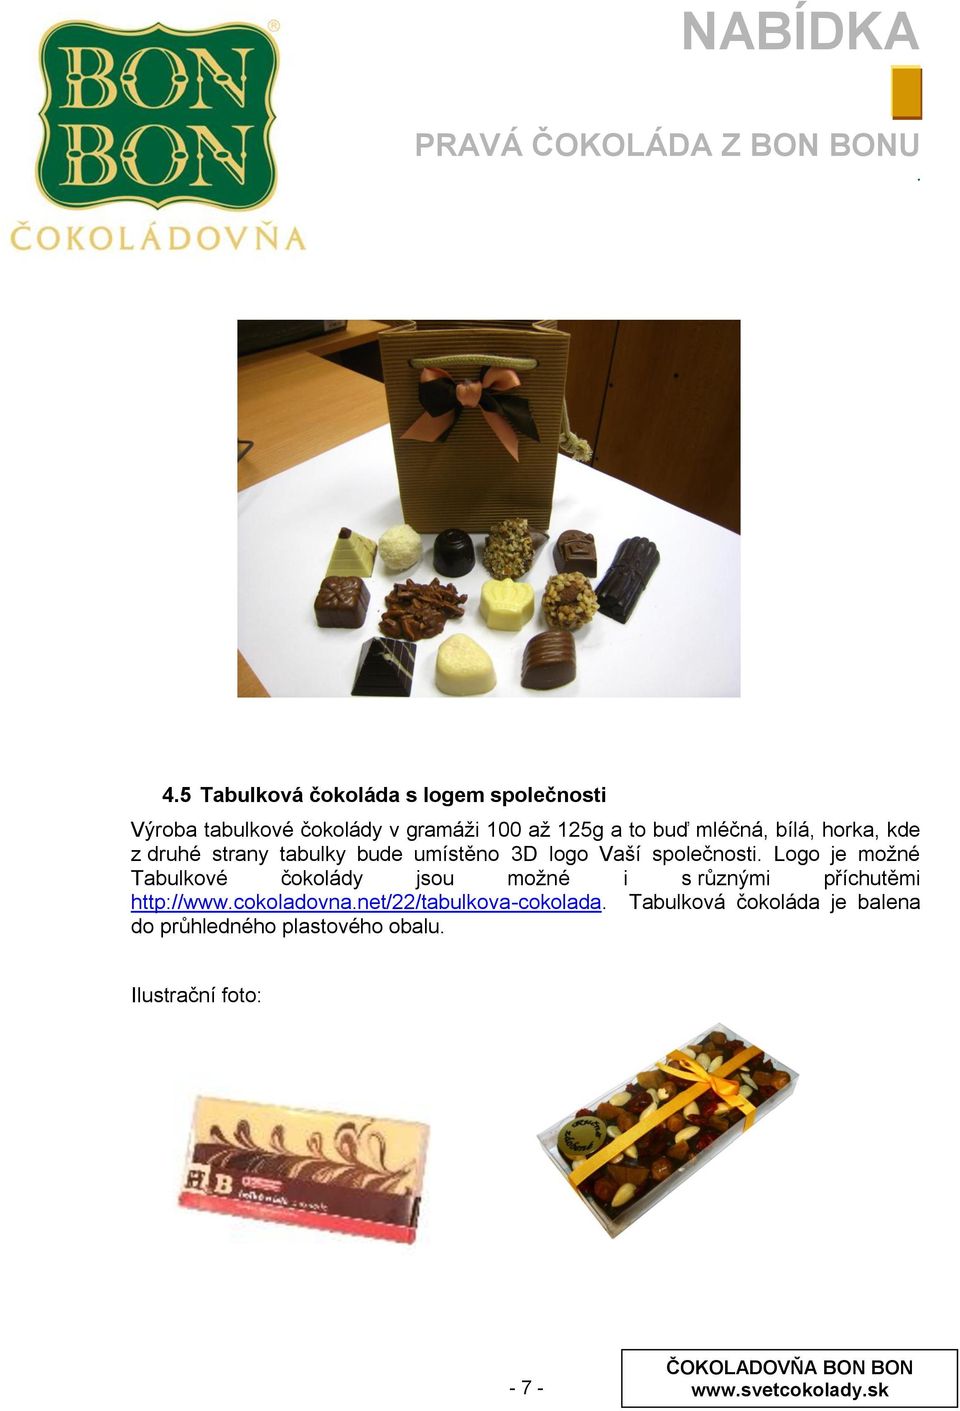 Tabulkové čokolády jsou moţné i s různými příchutěmi http://wwwcokoladovnanet/22/tabulkova-cokolada